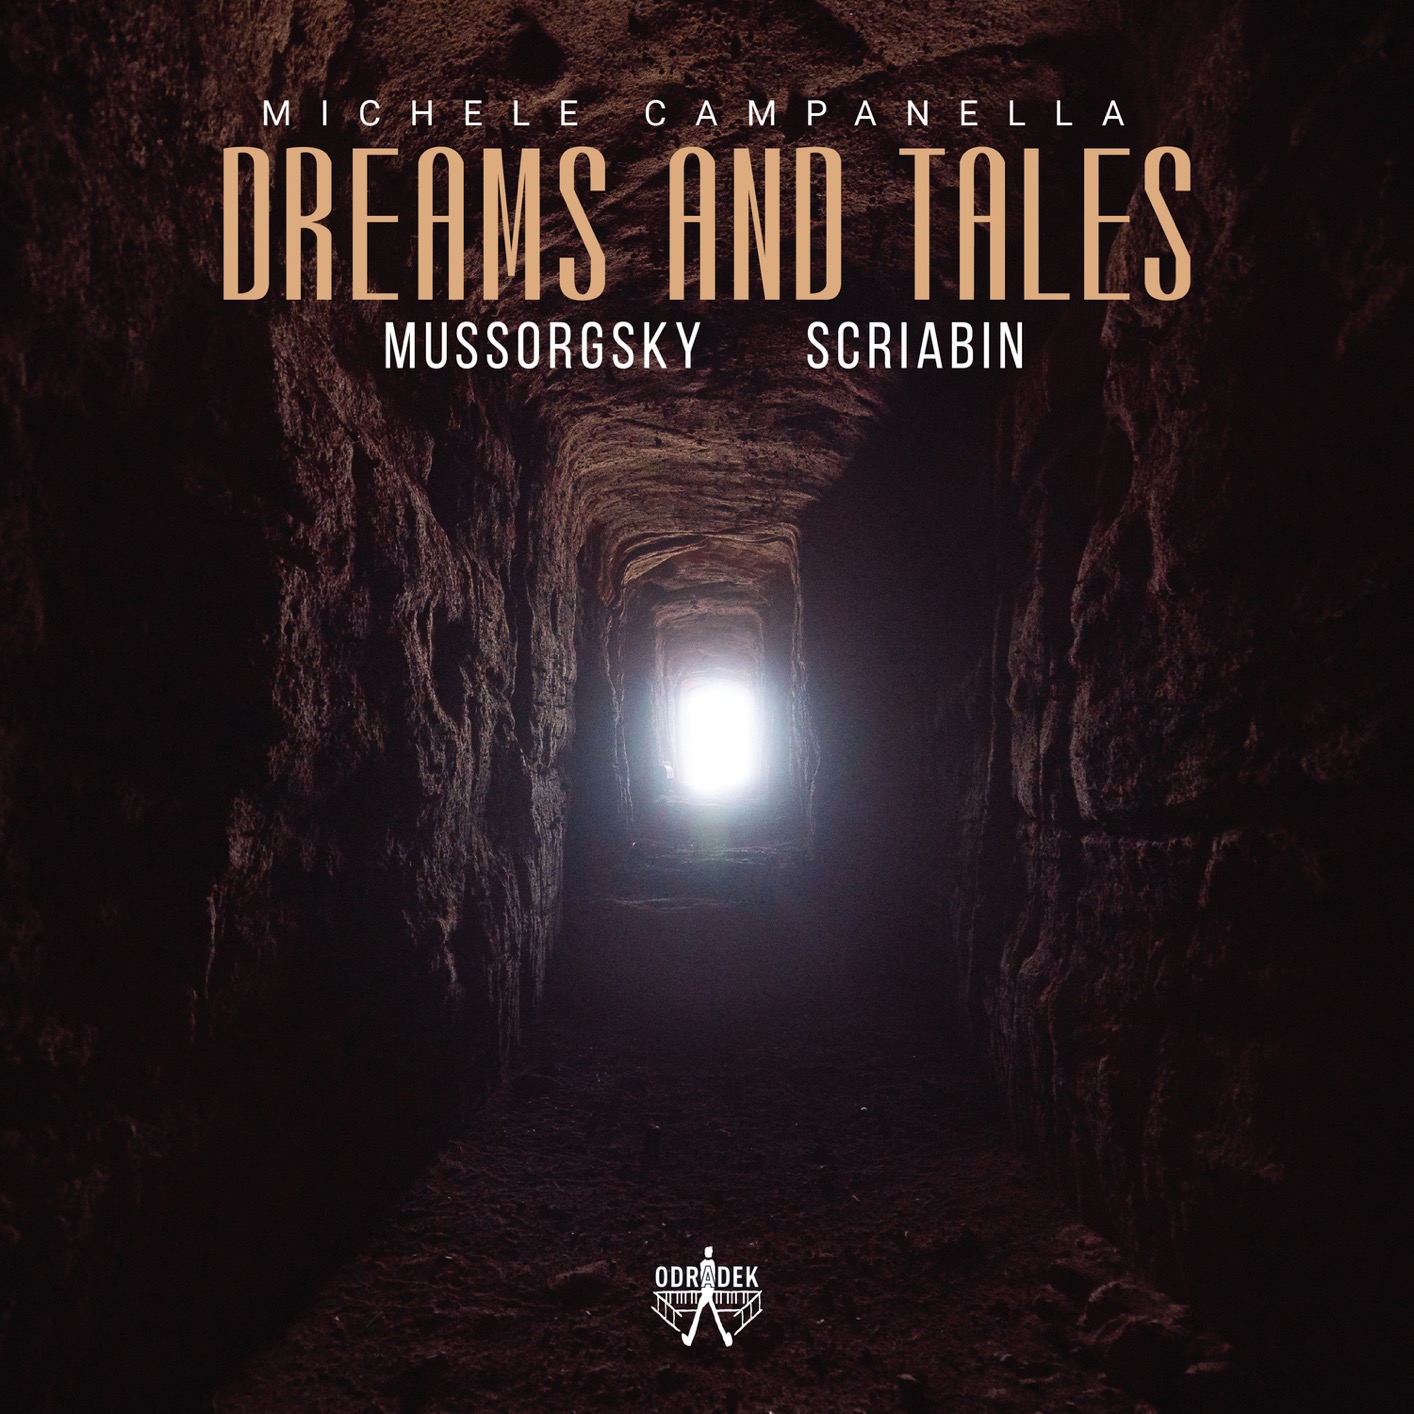 Michele Campanella – Dreams and Tales: Mussorgsky – Scriabin (2021) [FLAC 24bit/96kHz]